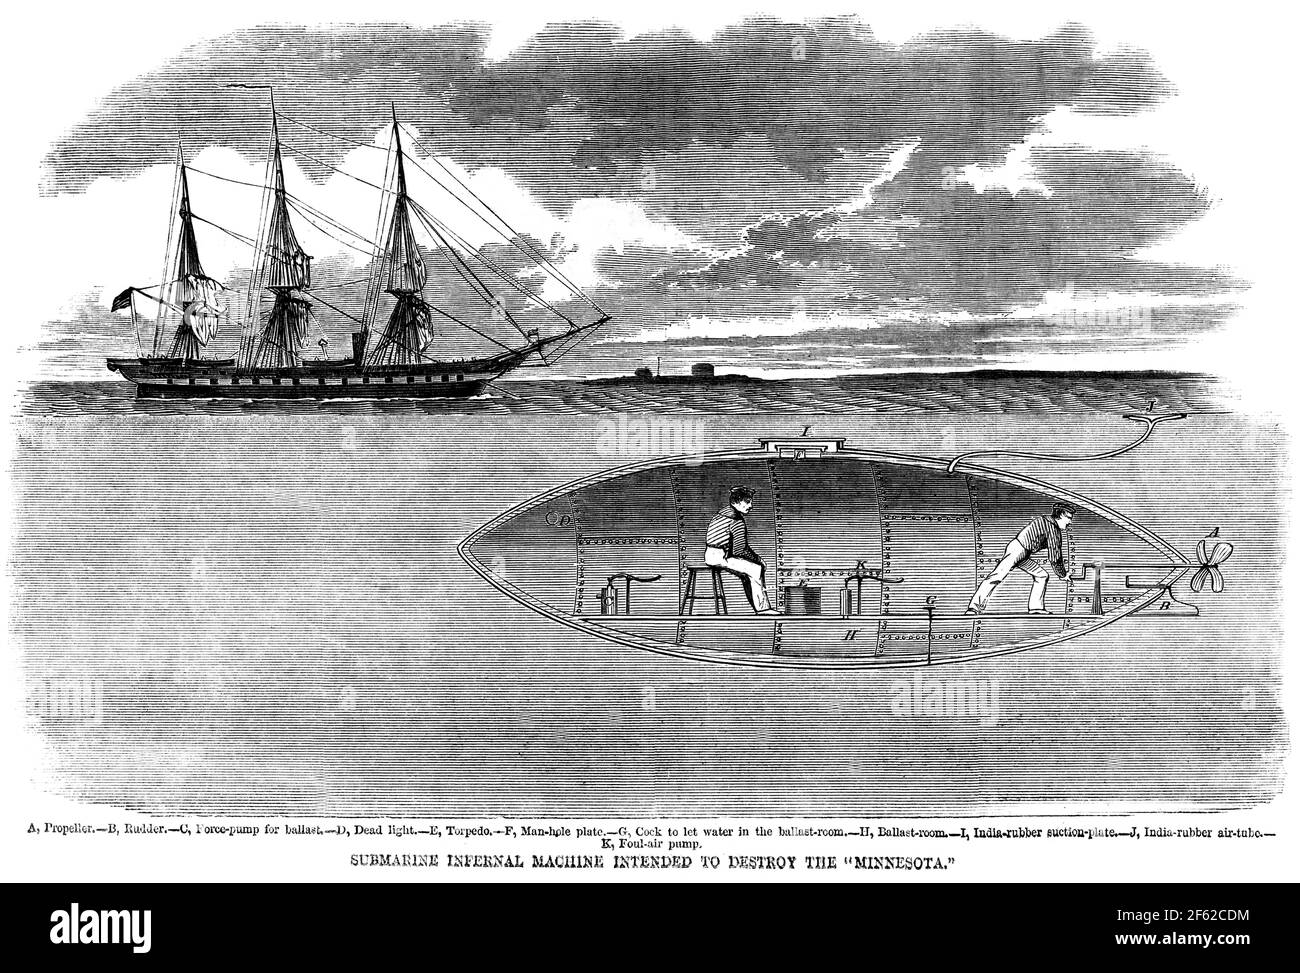 Amerikanischer Bürgerkrieg, Konföderierte U-Boot, 1861 Stockfoto